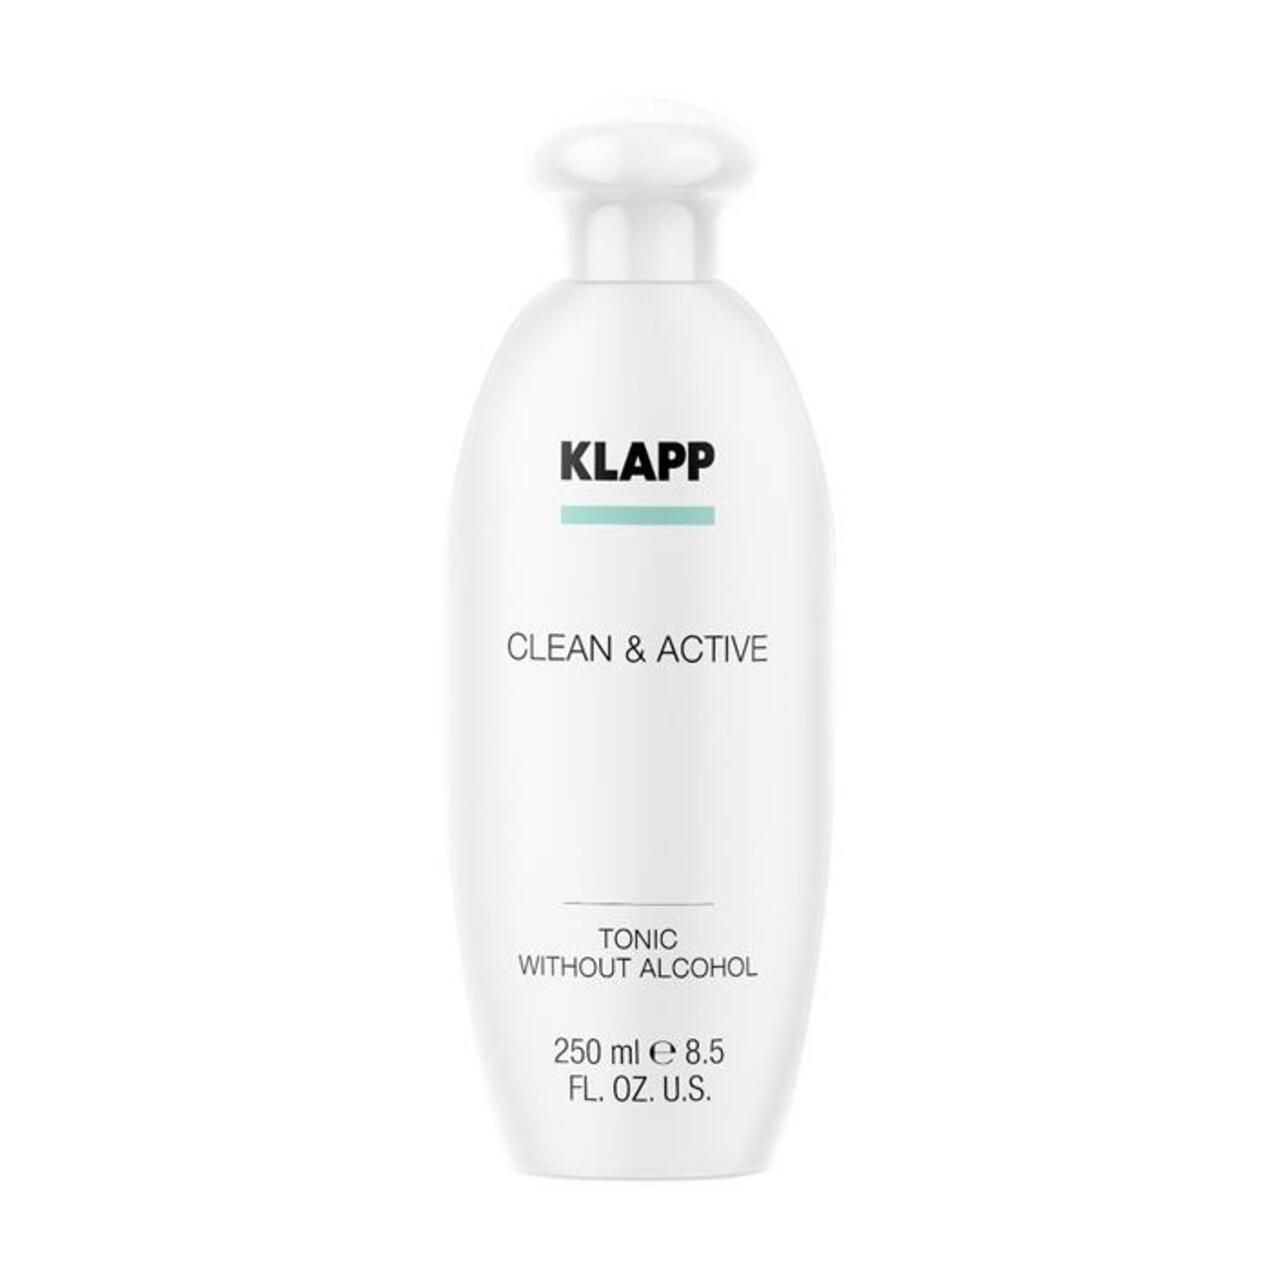 Klapp, Clean & Active Tonic without Alcohol